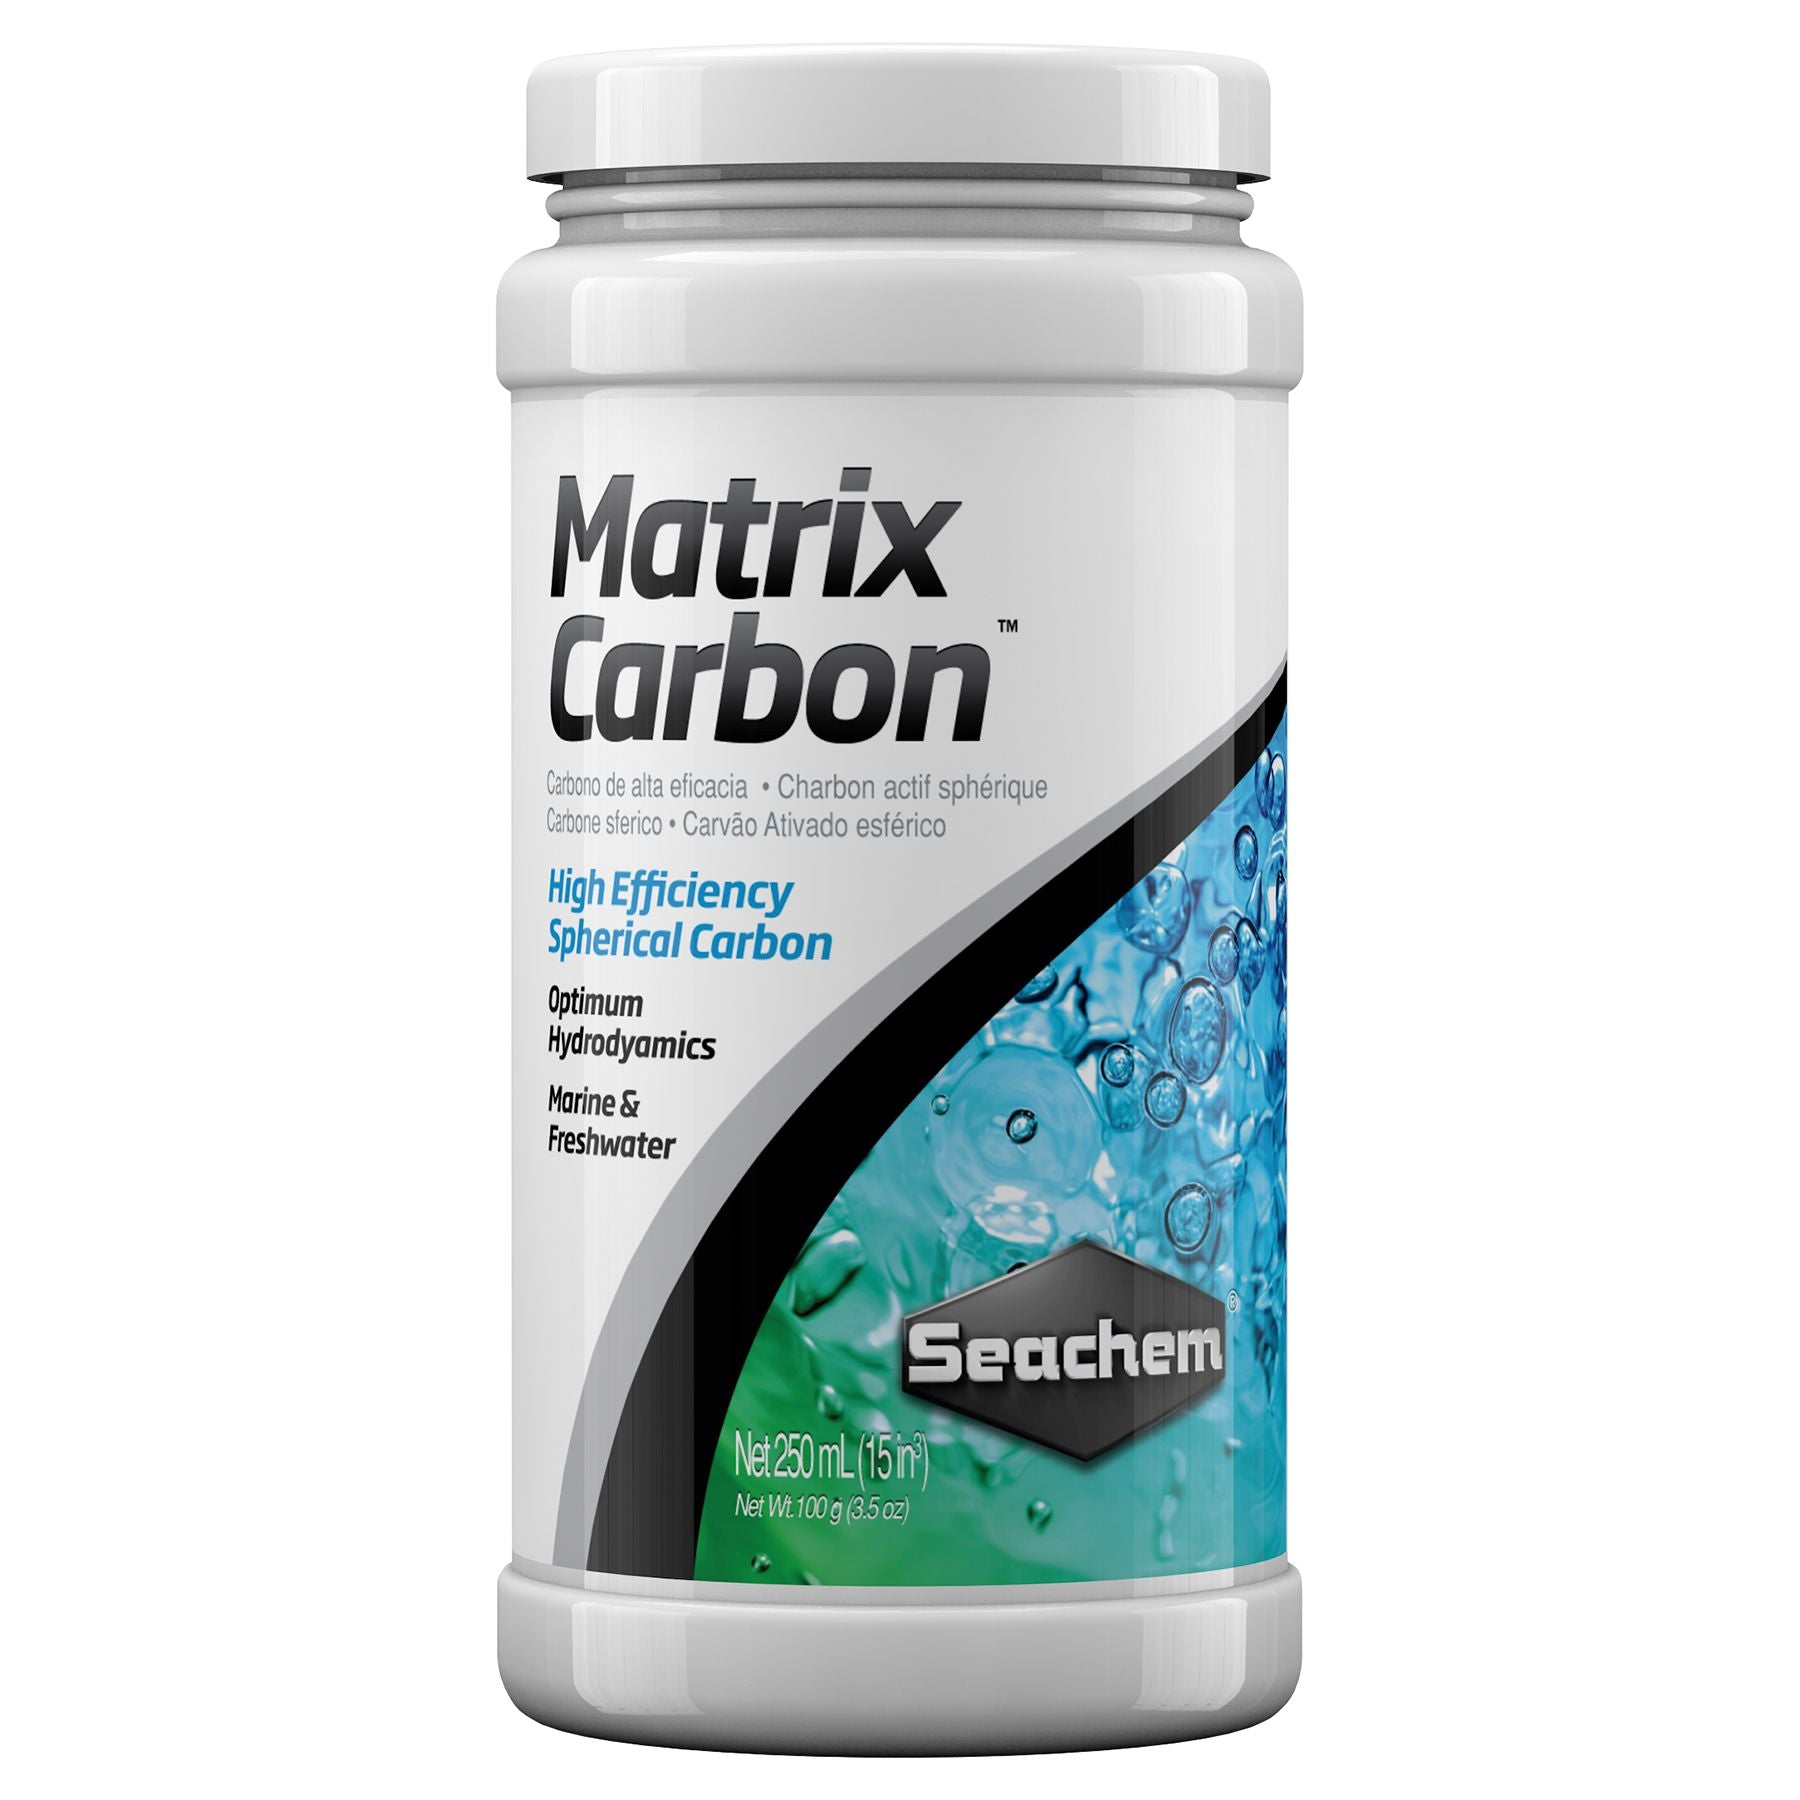 Seachem MatrixCarbon - Aquatia